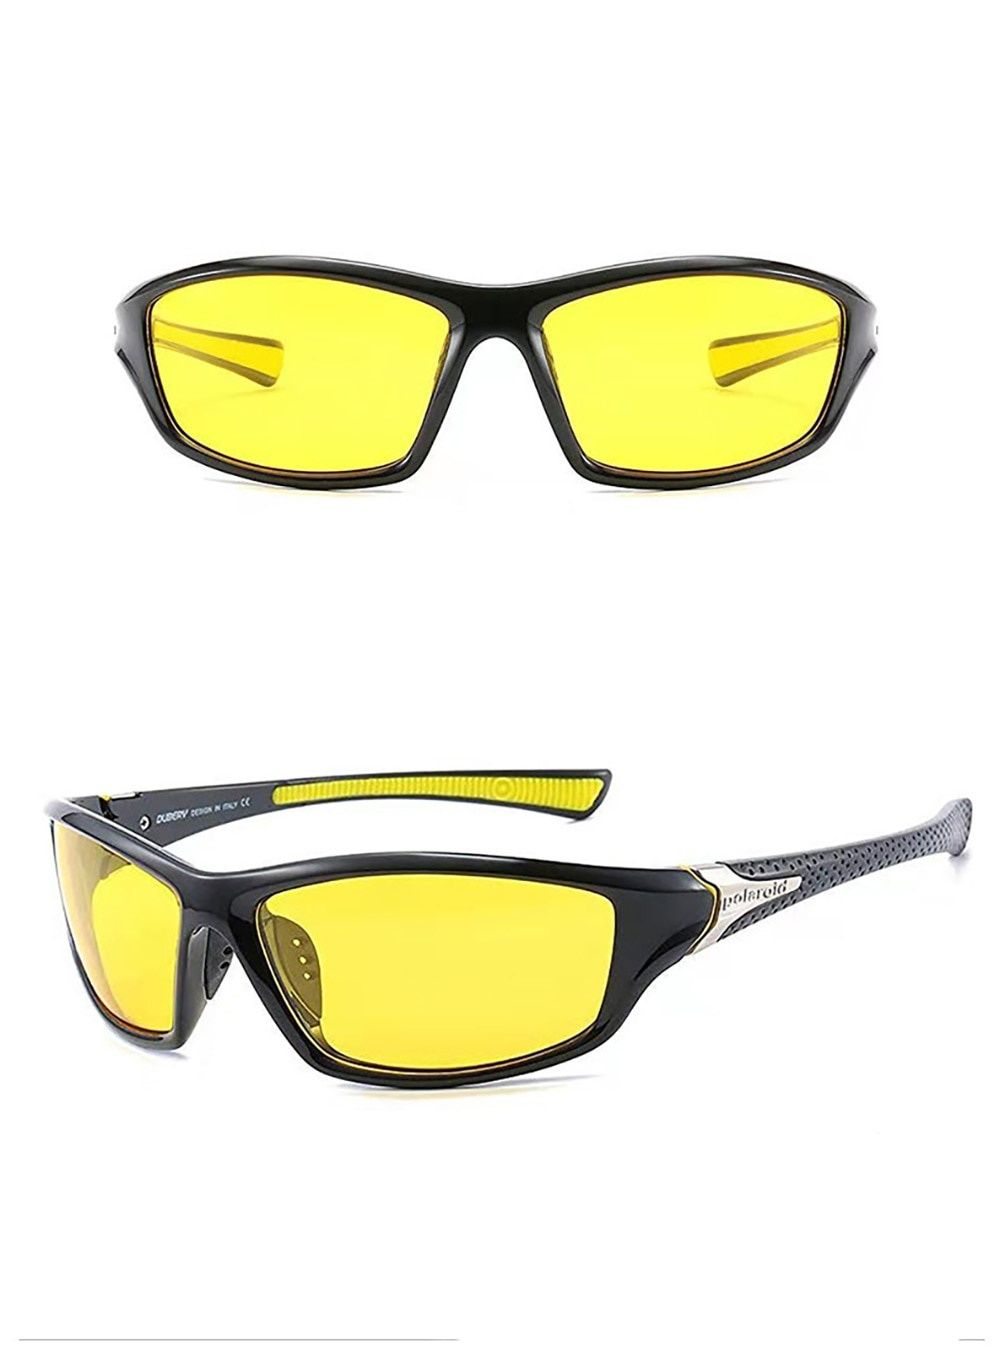 Поляризационные очки сонцезахисні полярізаційні окуляри